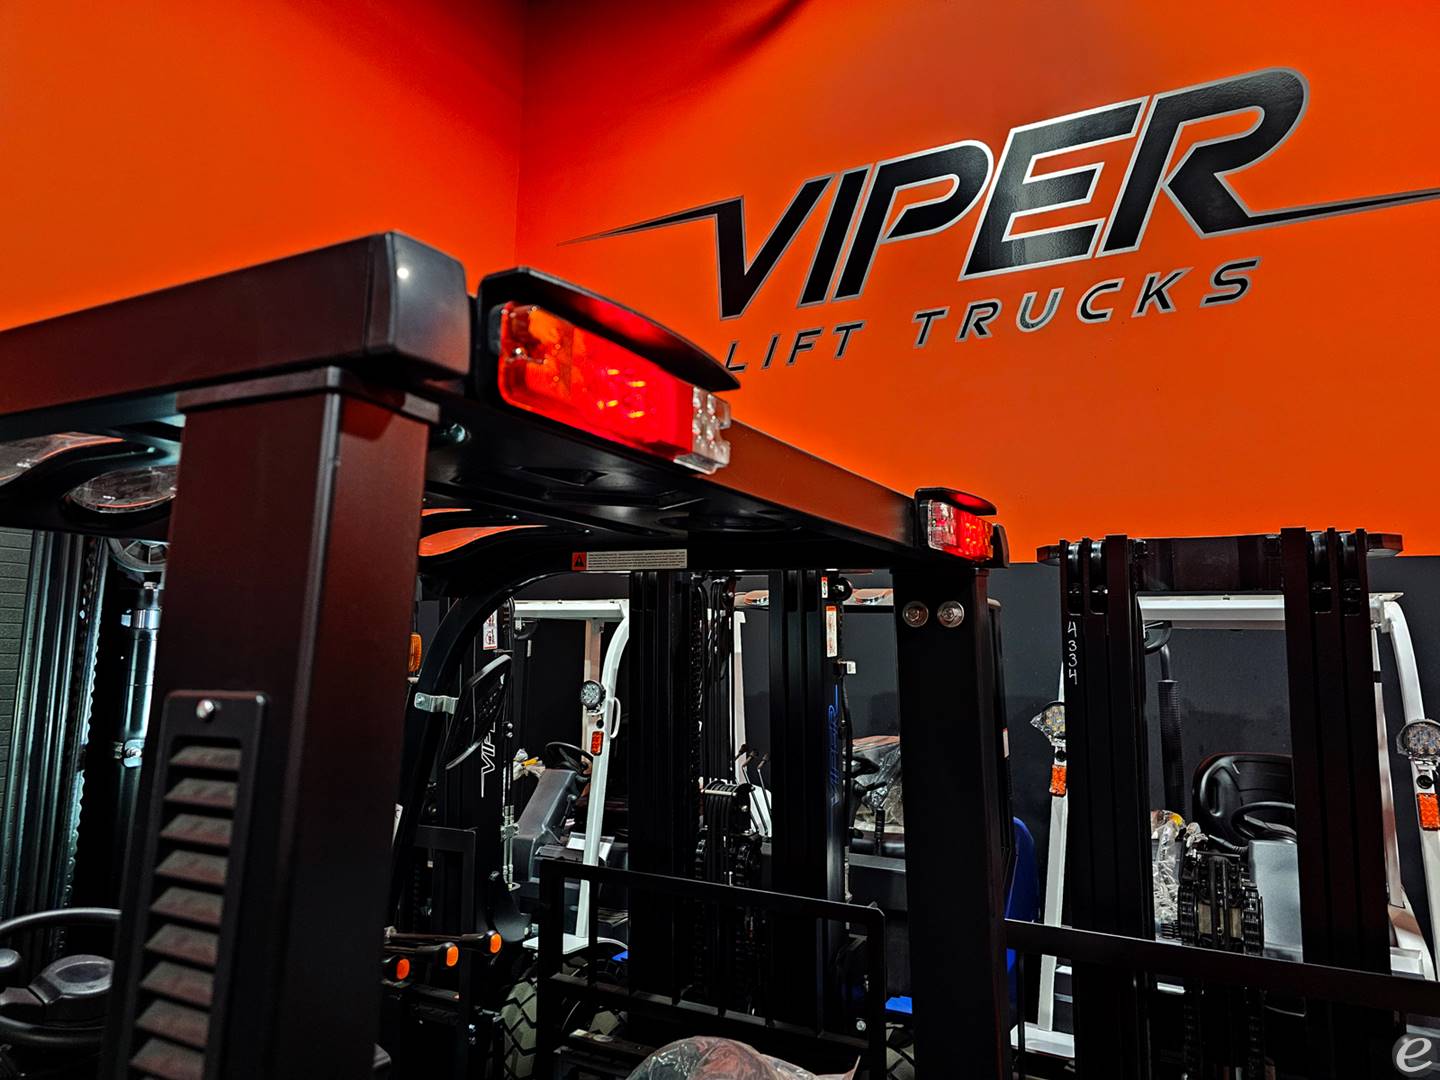 2024 Viper Lift Trucks FY45